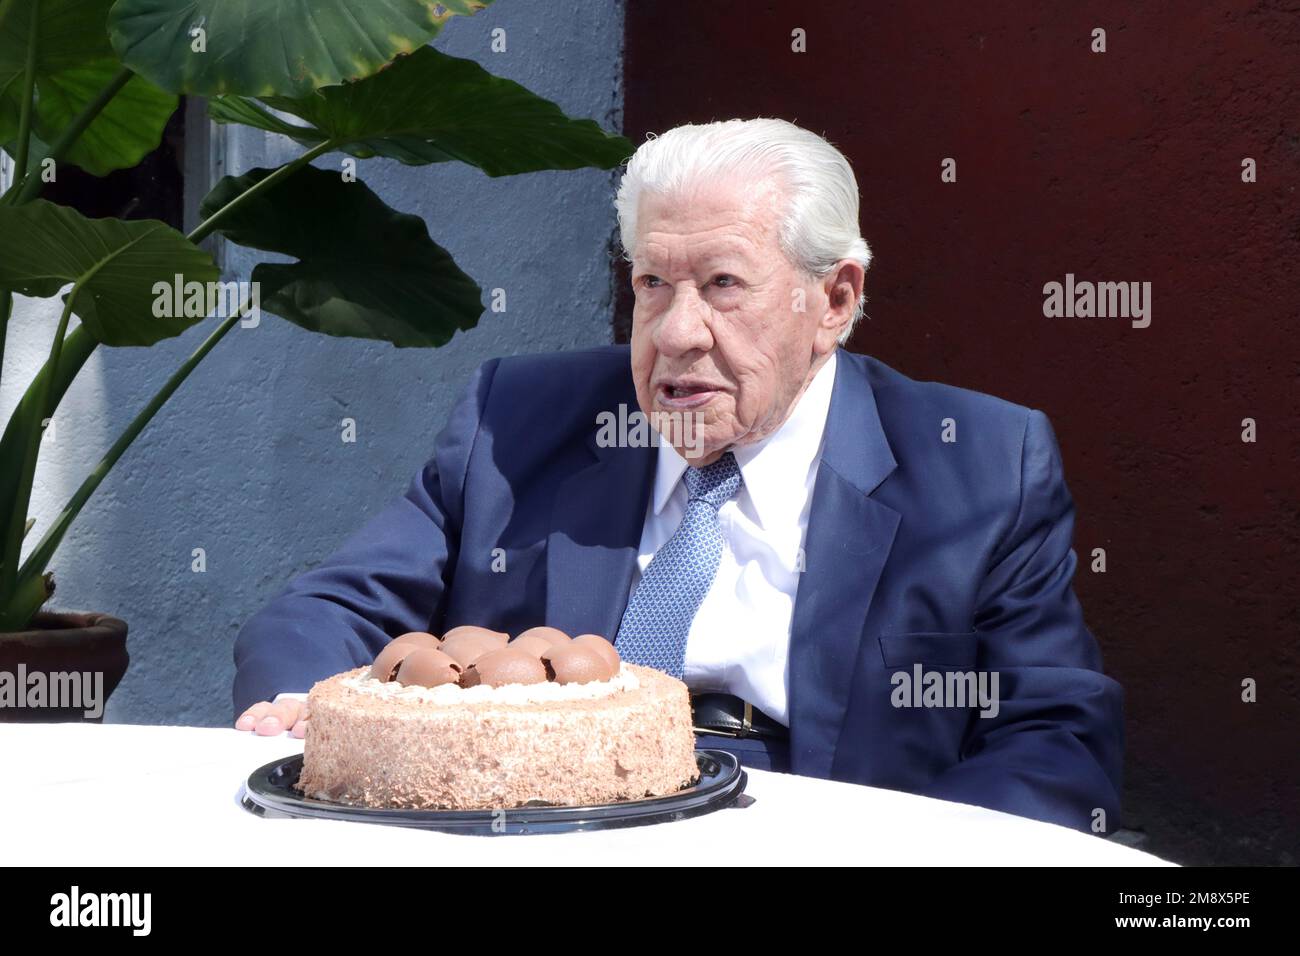 Ciudad de México, Ciudad de México, México. 15th de enero de 2023. Un retrato del actor mexicano de 98 años, IGNACIO LÓPEZ TARSO, tomado hoy en su casa en la Ciudad de México. IGNACIO LÓPEZ TARSO es el actor con más tiempo en la industria cinematográfica mexicana y uno de los últimos actores sobrevivientes de la edad dorada del cine mexicano. (Imagen de crédito: © Jorge Nunez/ZUMA Press Wire) ¡USO EDITORIAL SOLAMENTE! ¡No para USO comercial! Foto de stock